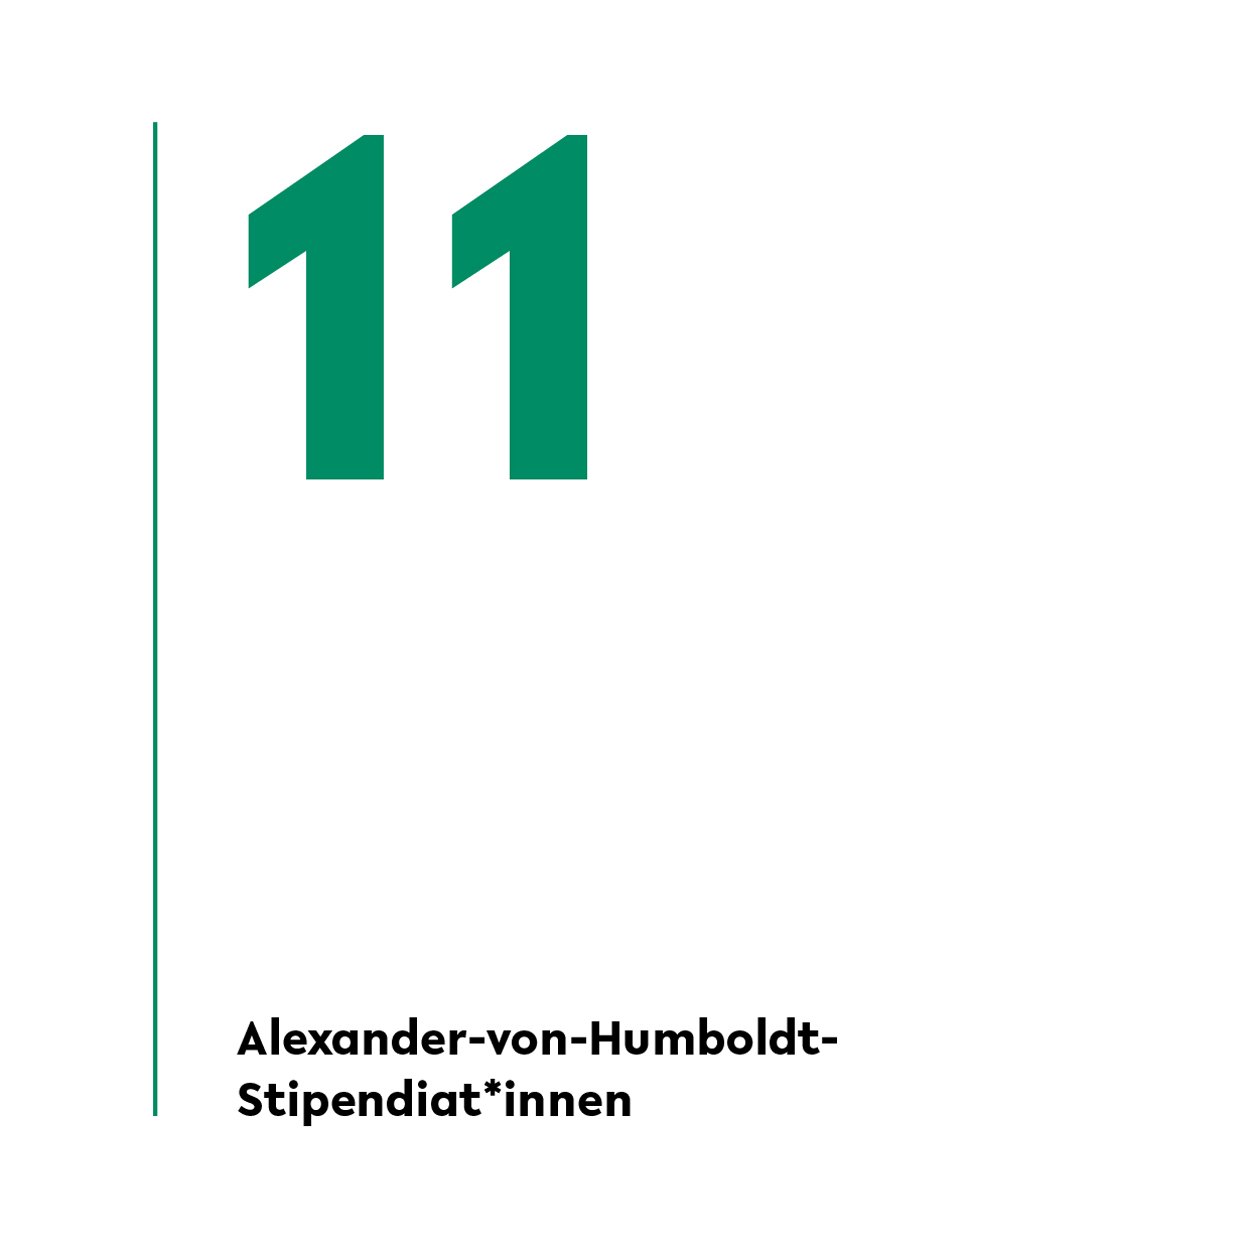 Von den internationalen Studierenden an der Universität Bielefeld werden 16 mit Alexander-von-Humboldt-Stipendien gefördert. 